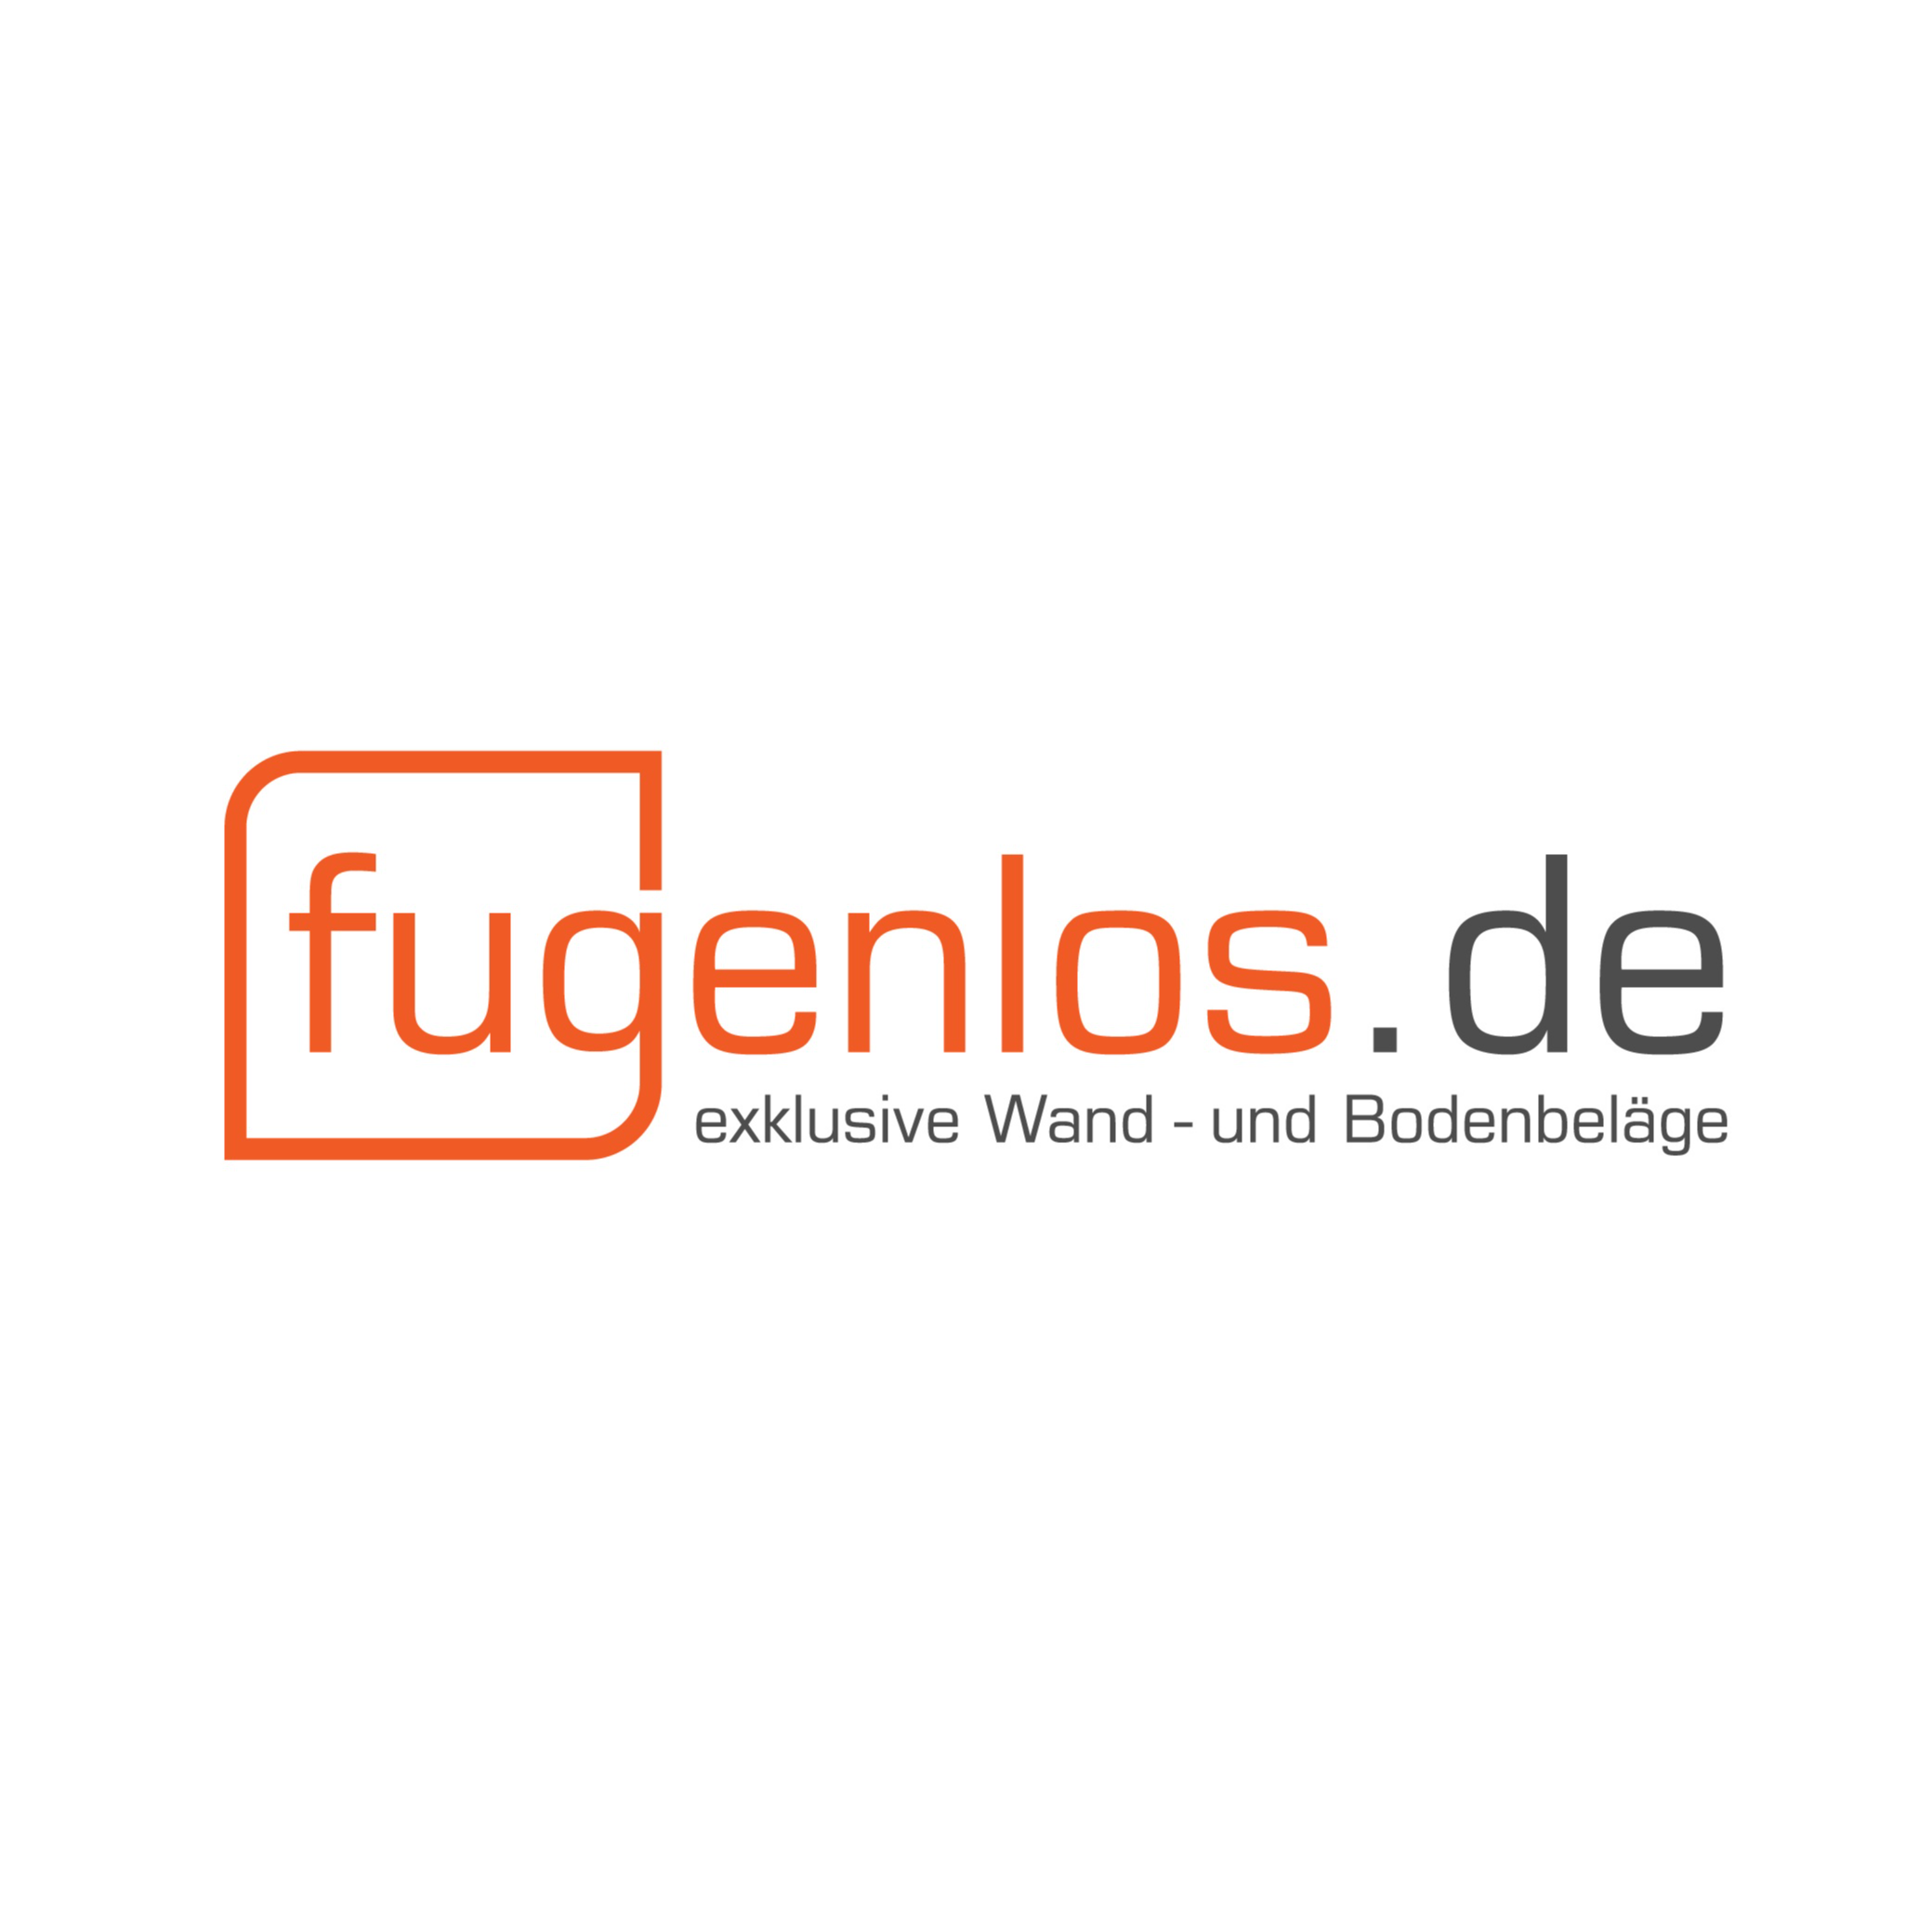 fugenlos.de - exklusive Wand- und Bodenbeläge - Inhaber Tim Marneth Logo